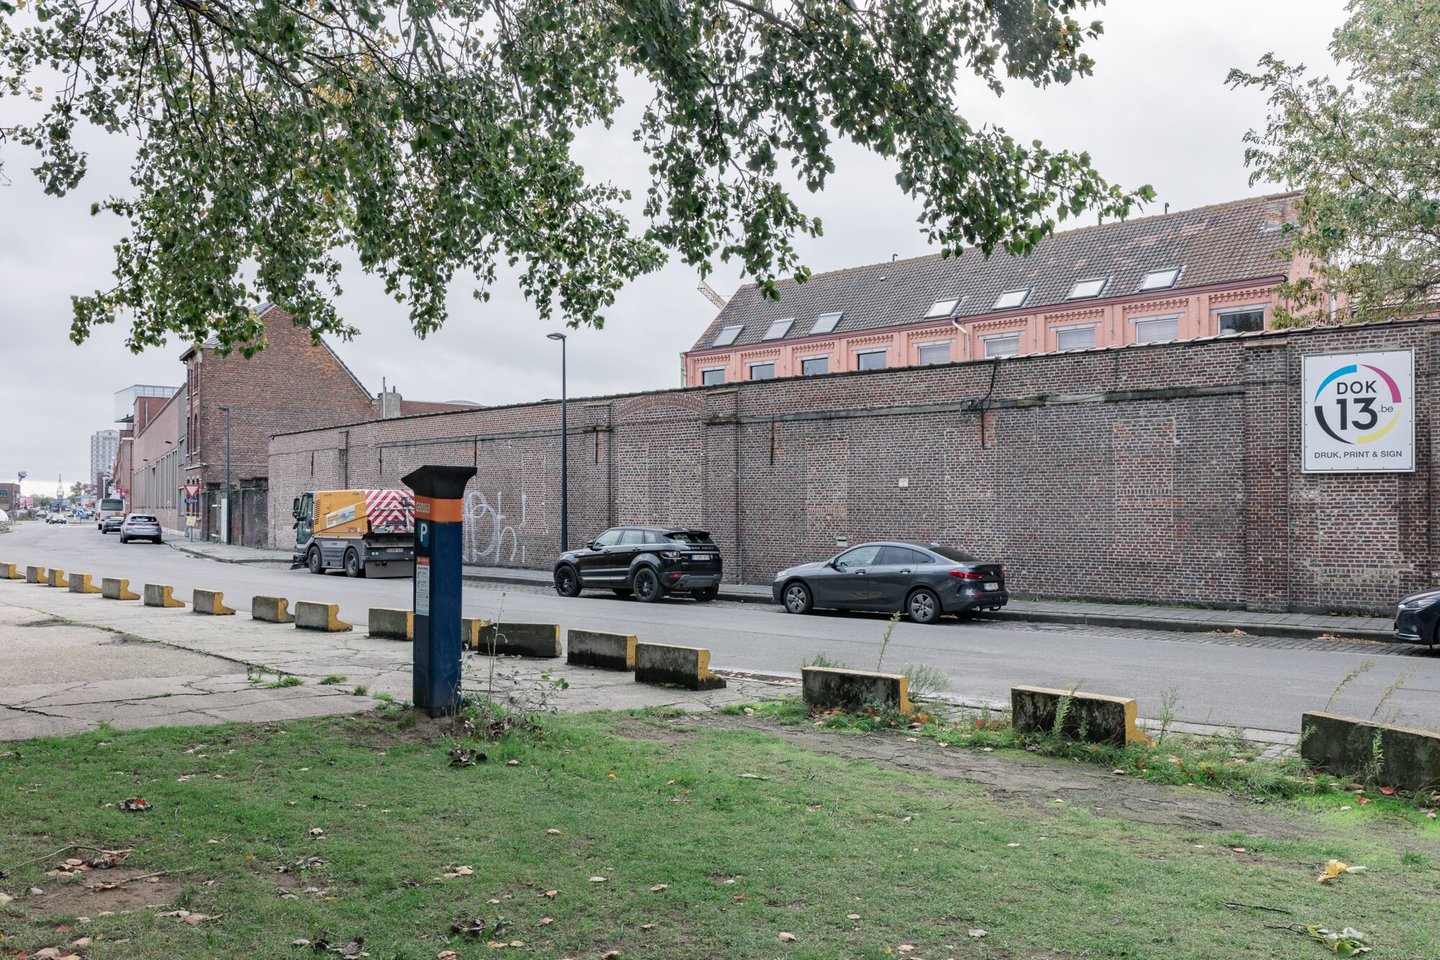 Buitenzicht van voormalige textielfabriek Linière Saint-Sauveur in Gent